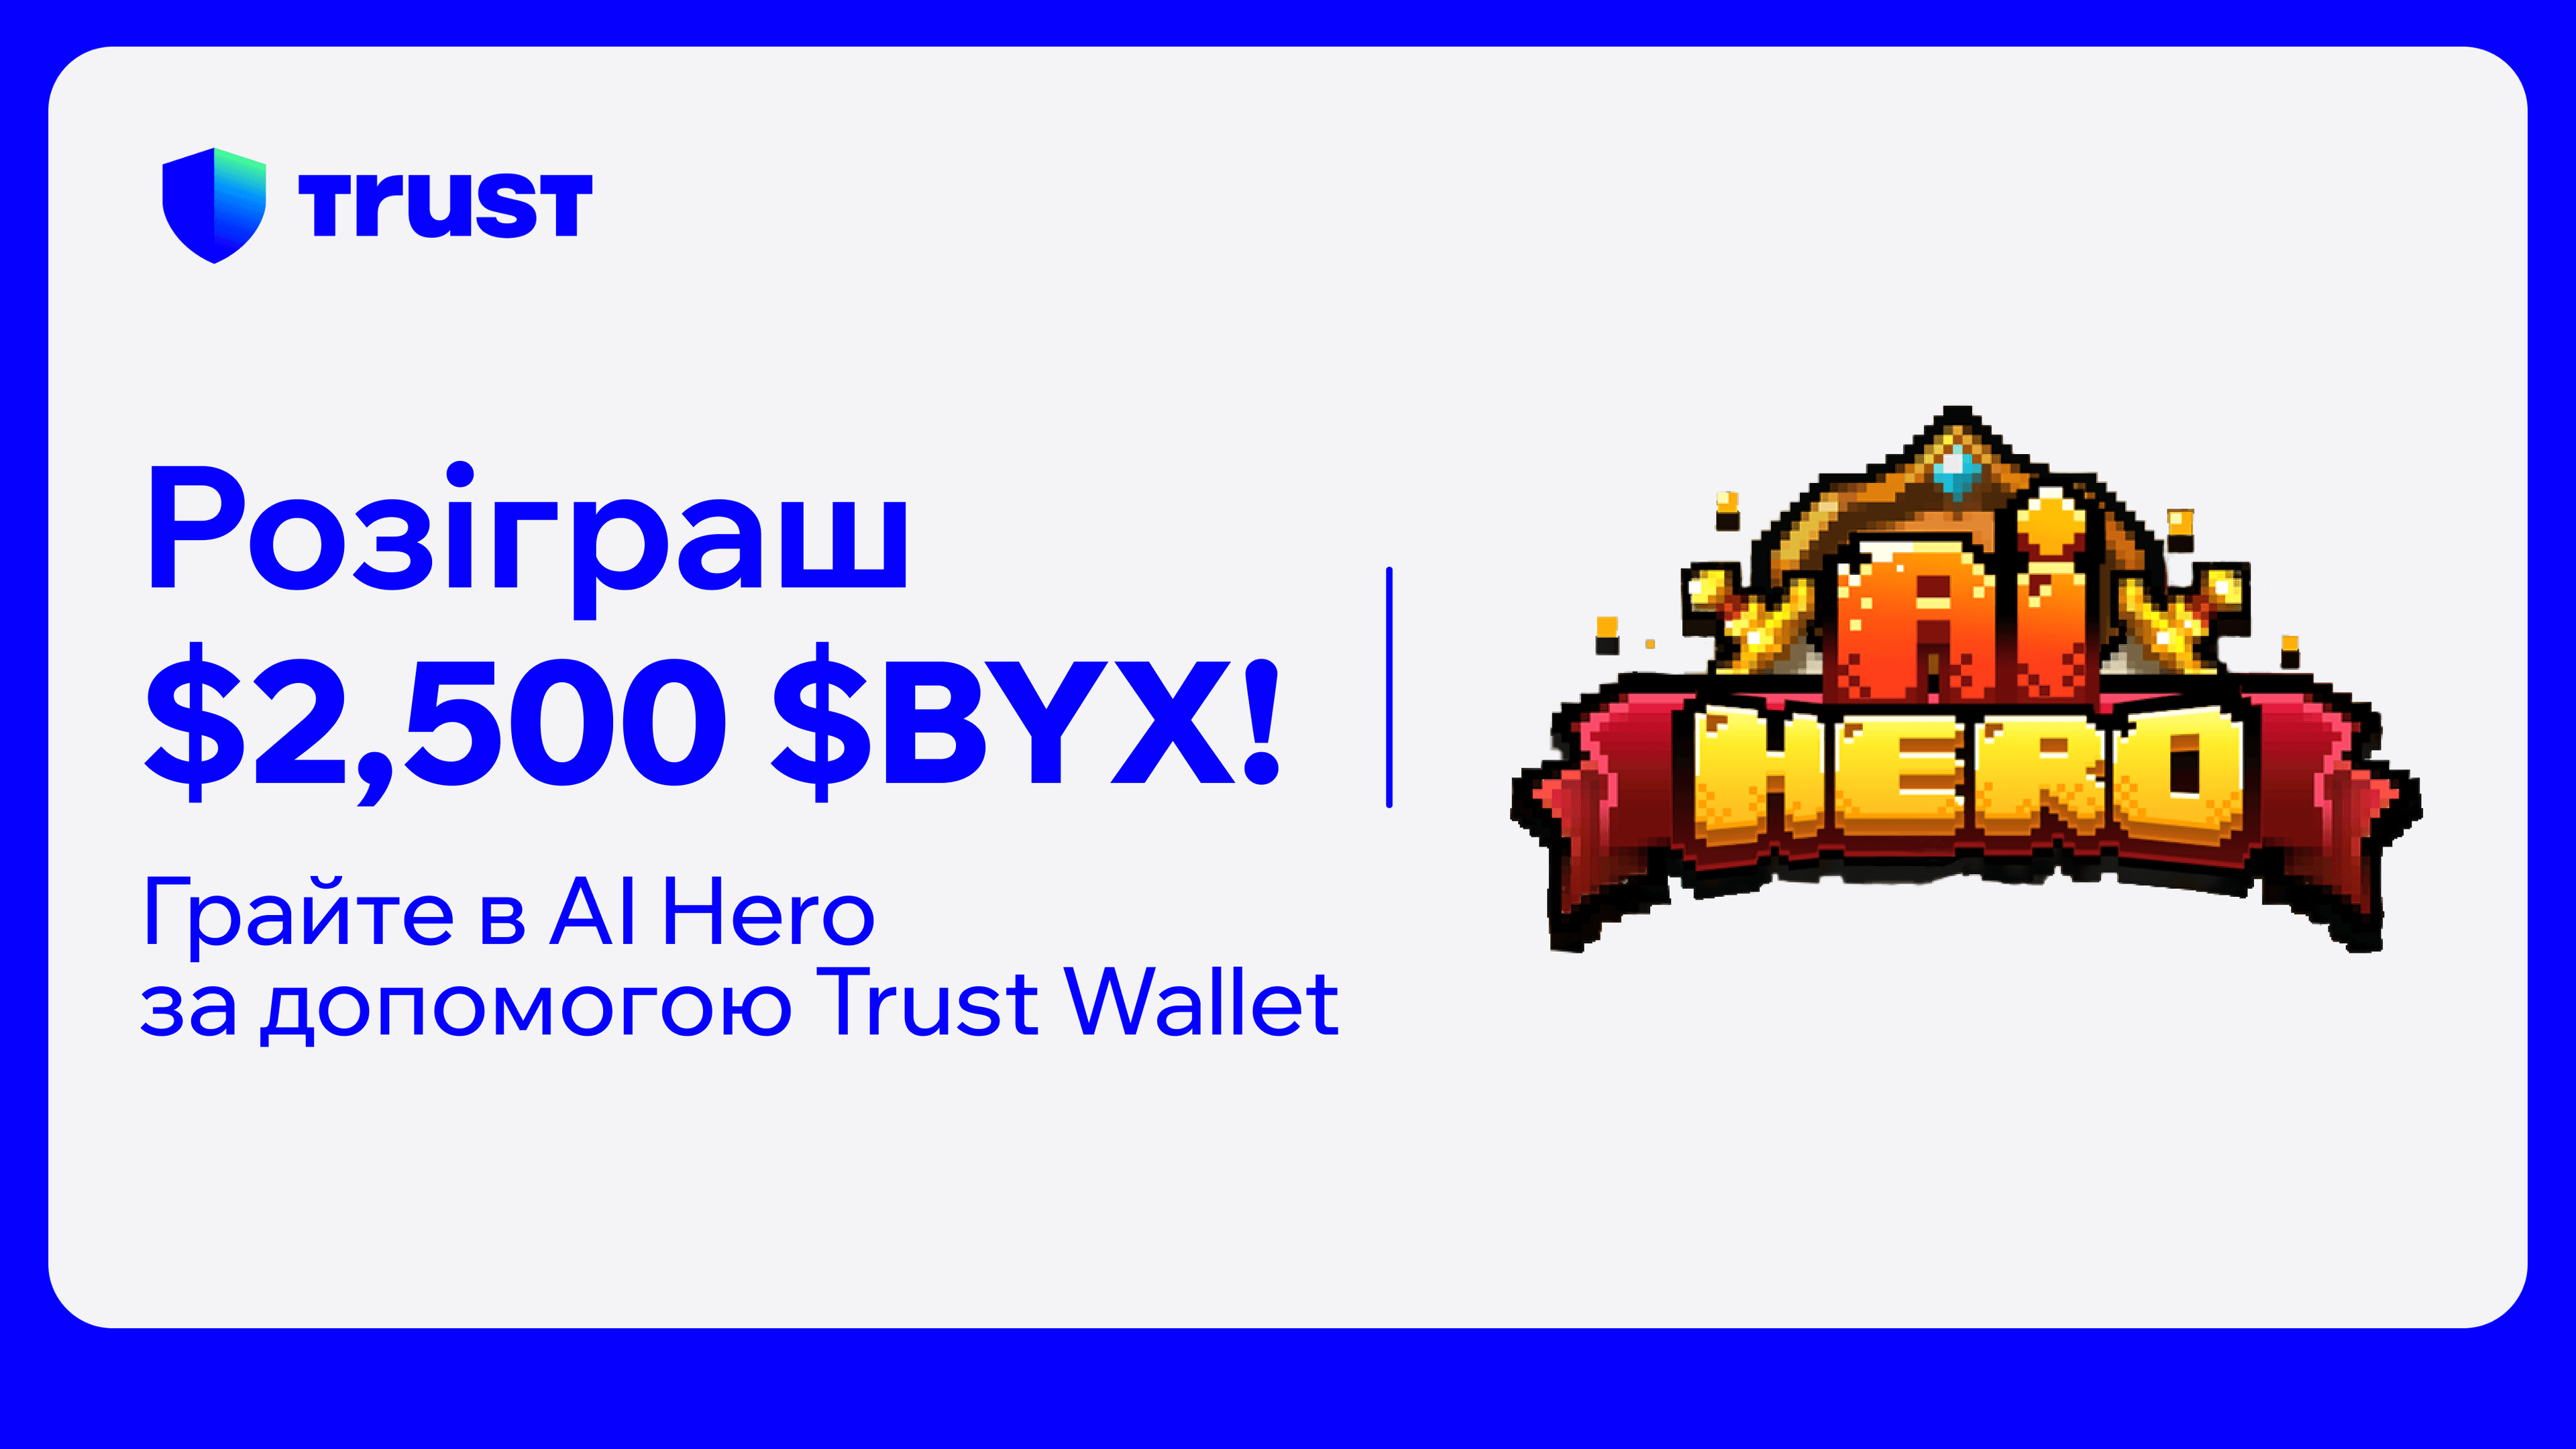 Грайте в AI Hero за допомогою Trust Wallet та вигравайте з фонду у $2500